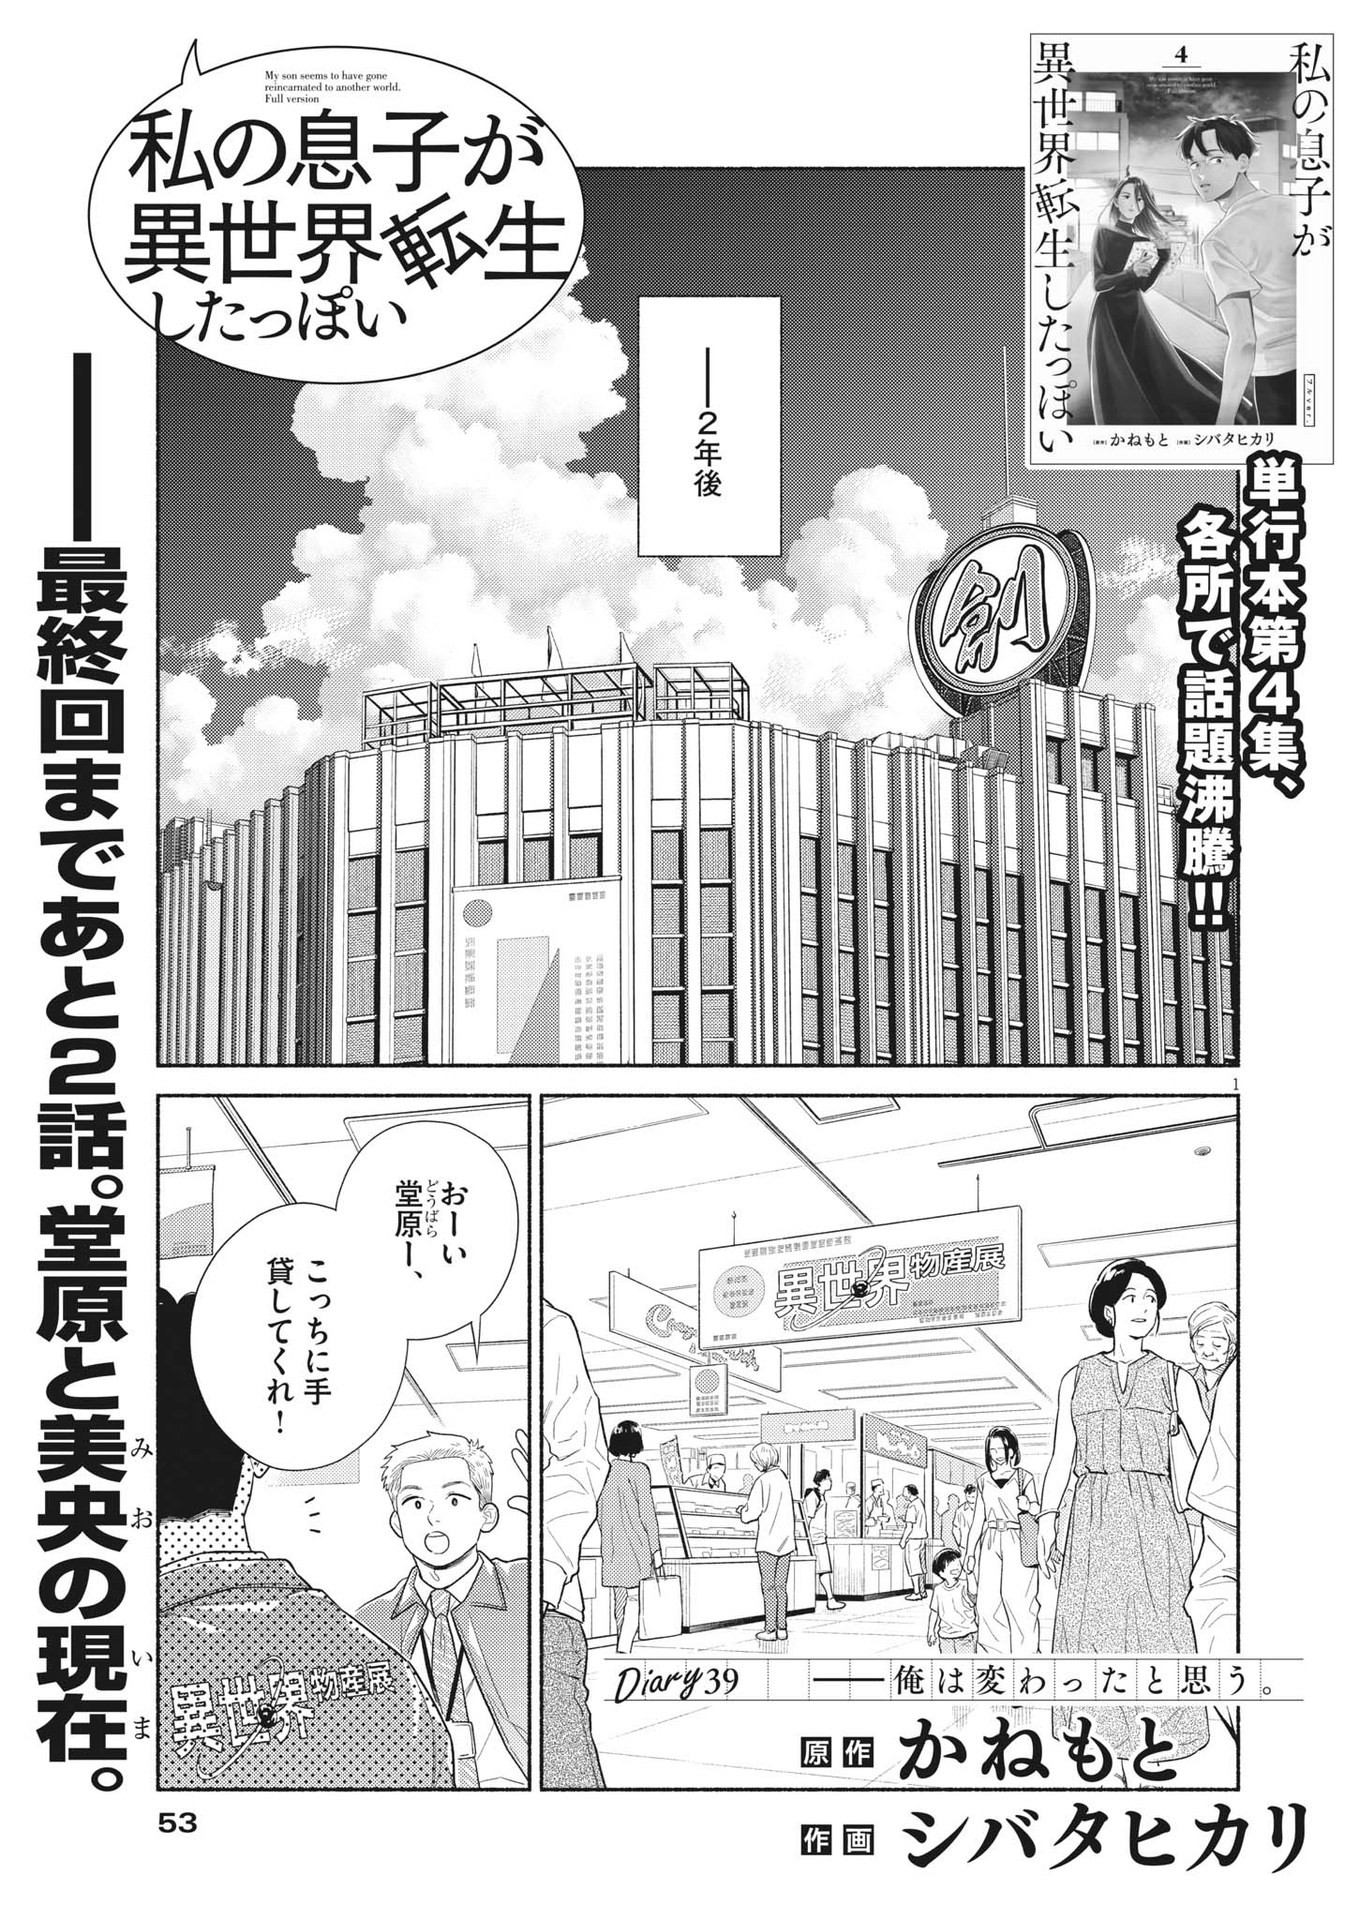 Watashi no Musuko ga Isekai Tensei Shita ppoi - Chapter 39 - Page 1